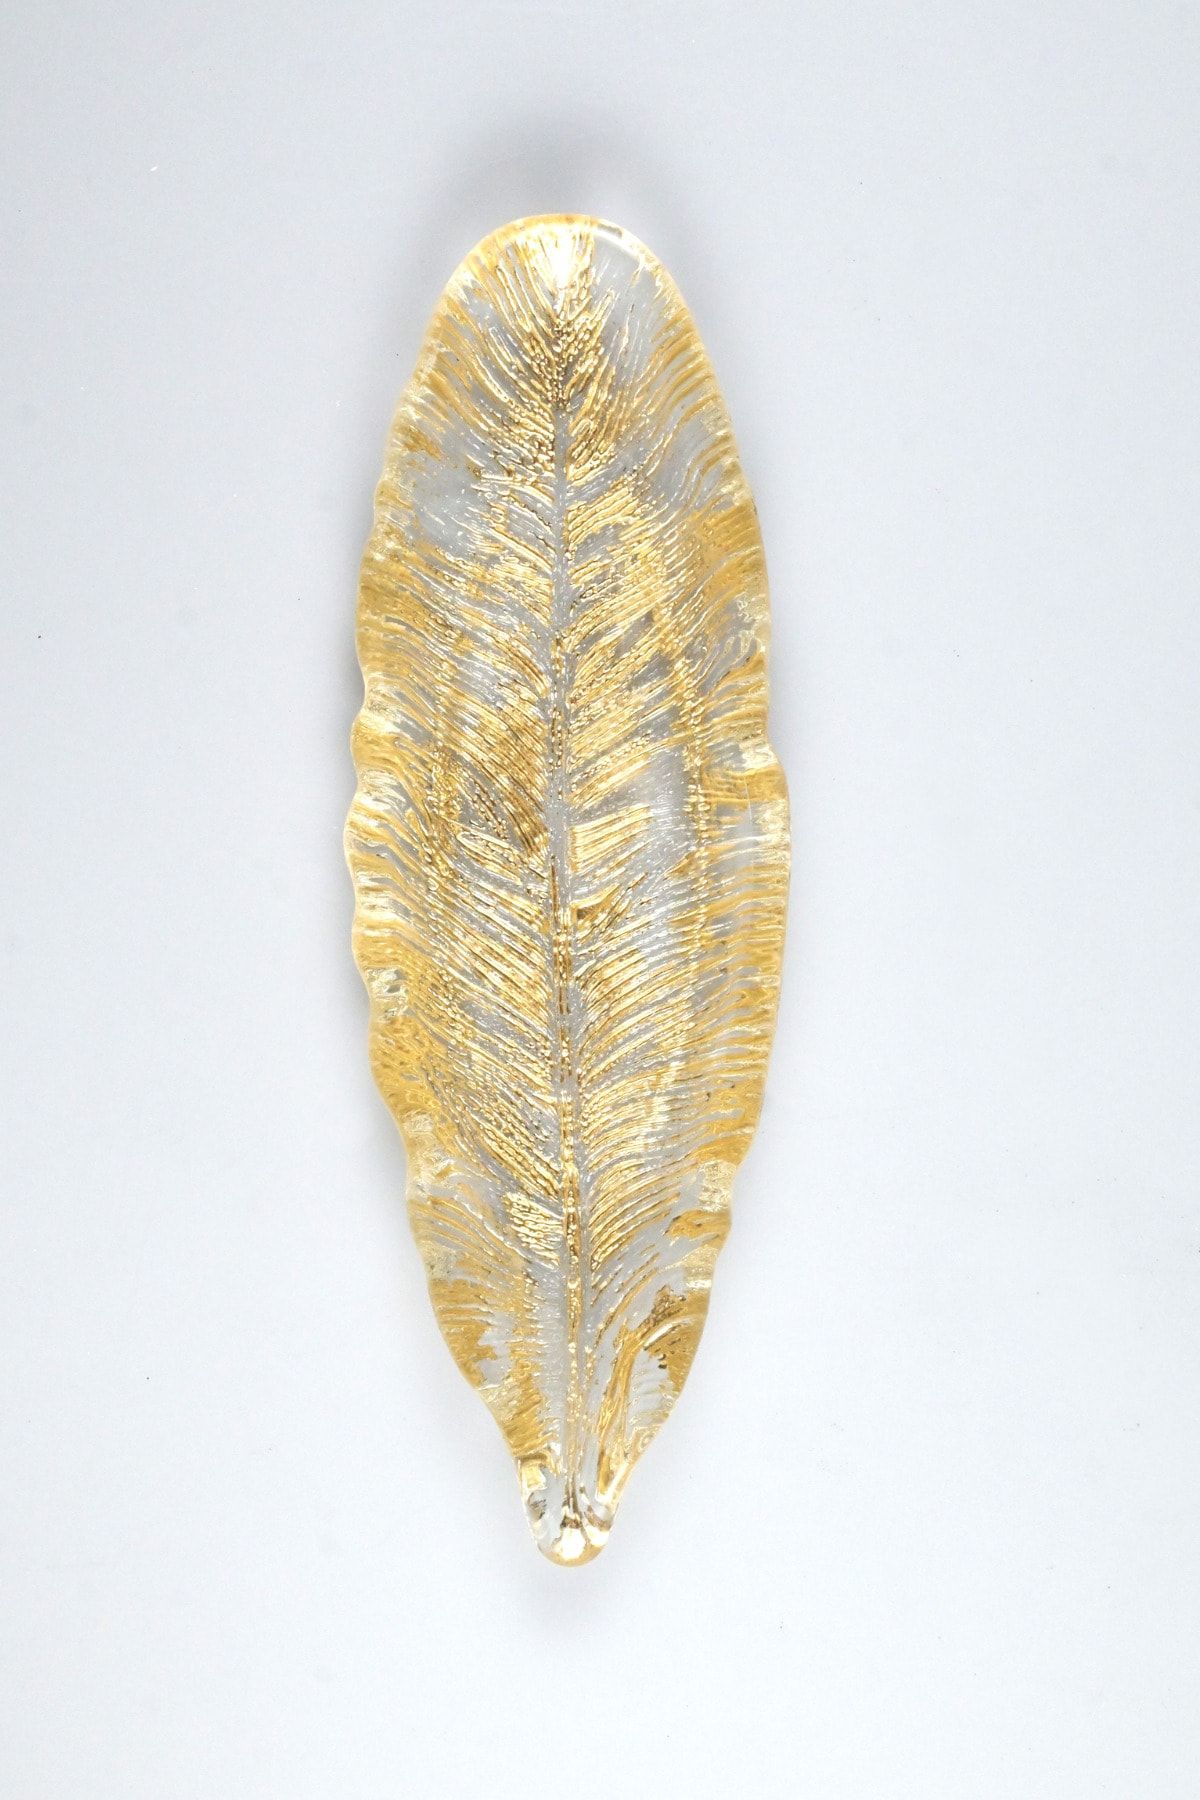 Heritage Altın Varak Eskitme Detaylı Kuş Tüyü Dekoratif Cam Servis Sunum Tabağı 25x9 Cm